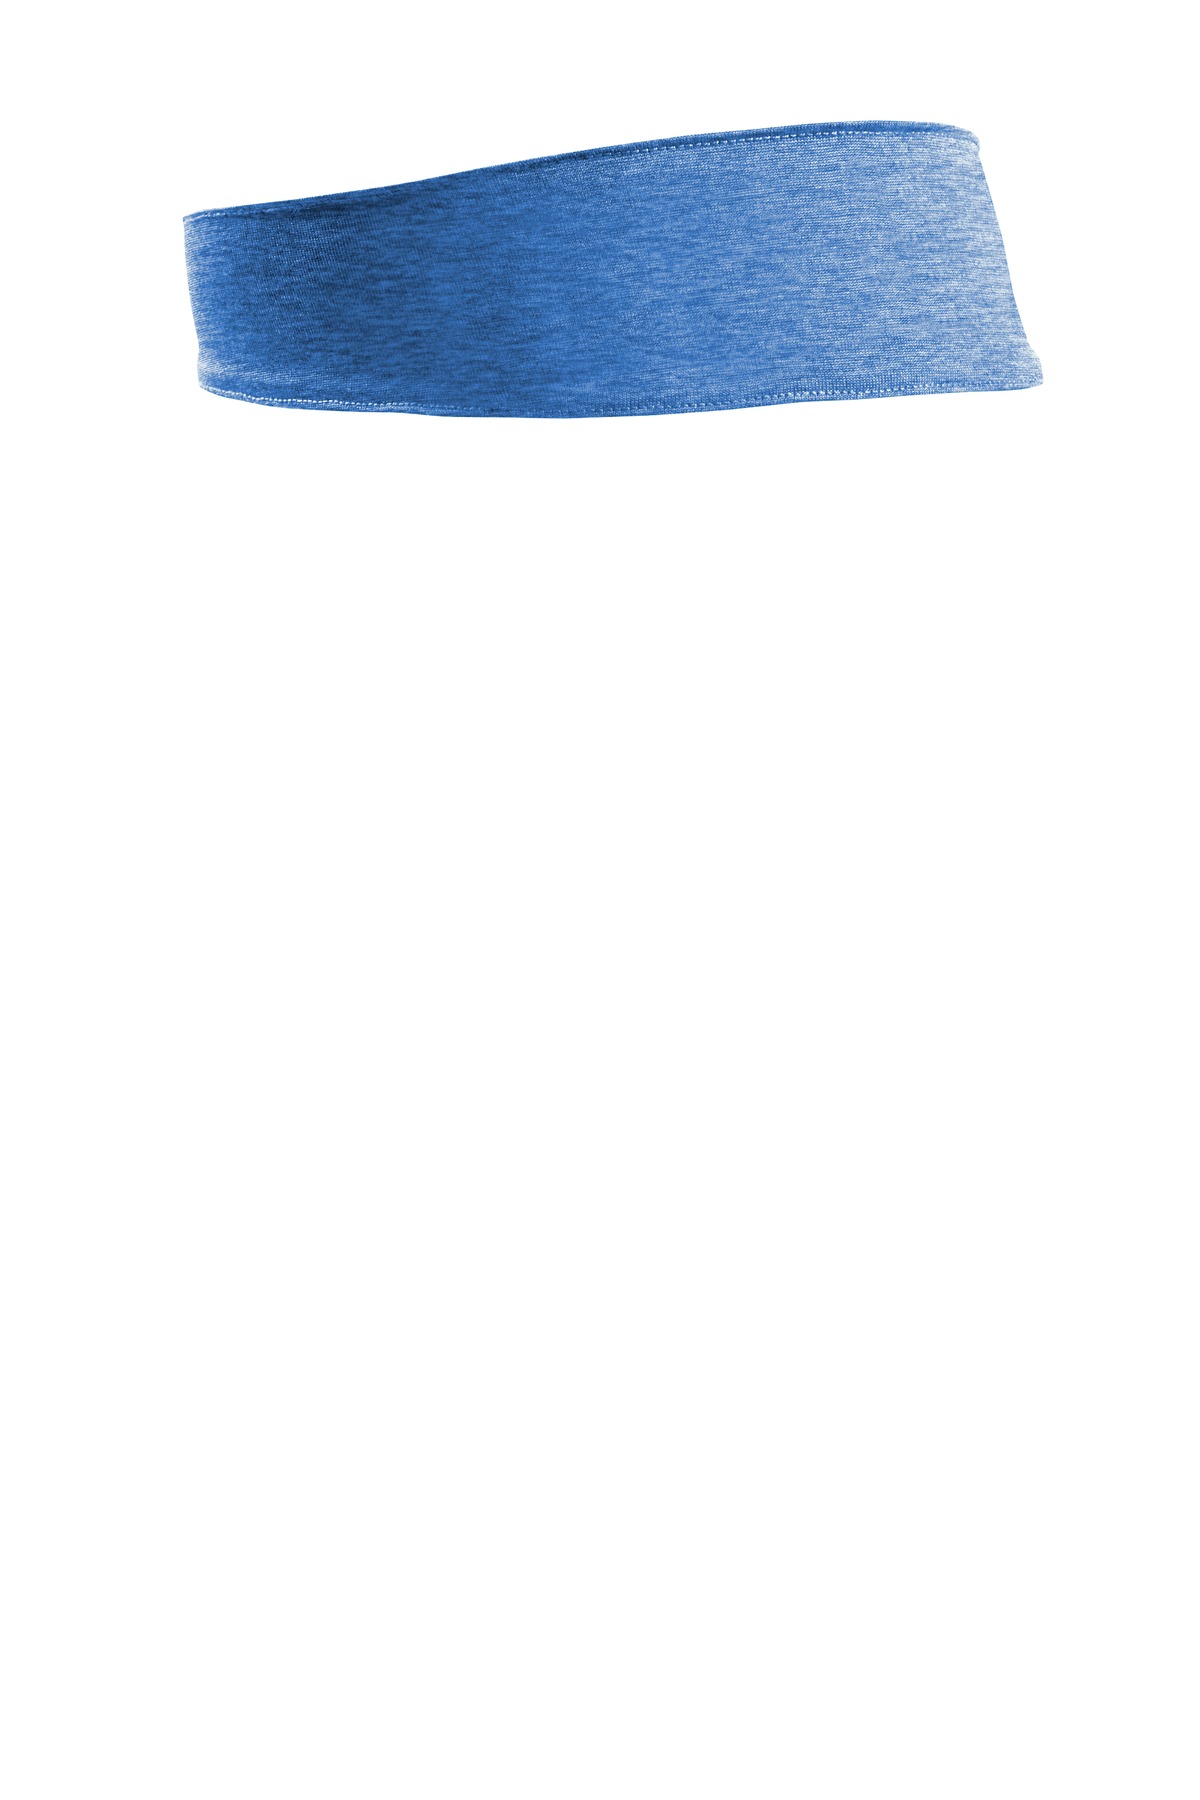 Sport-Tek  Contender  Headband. STA46